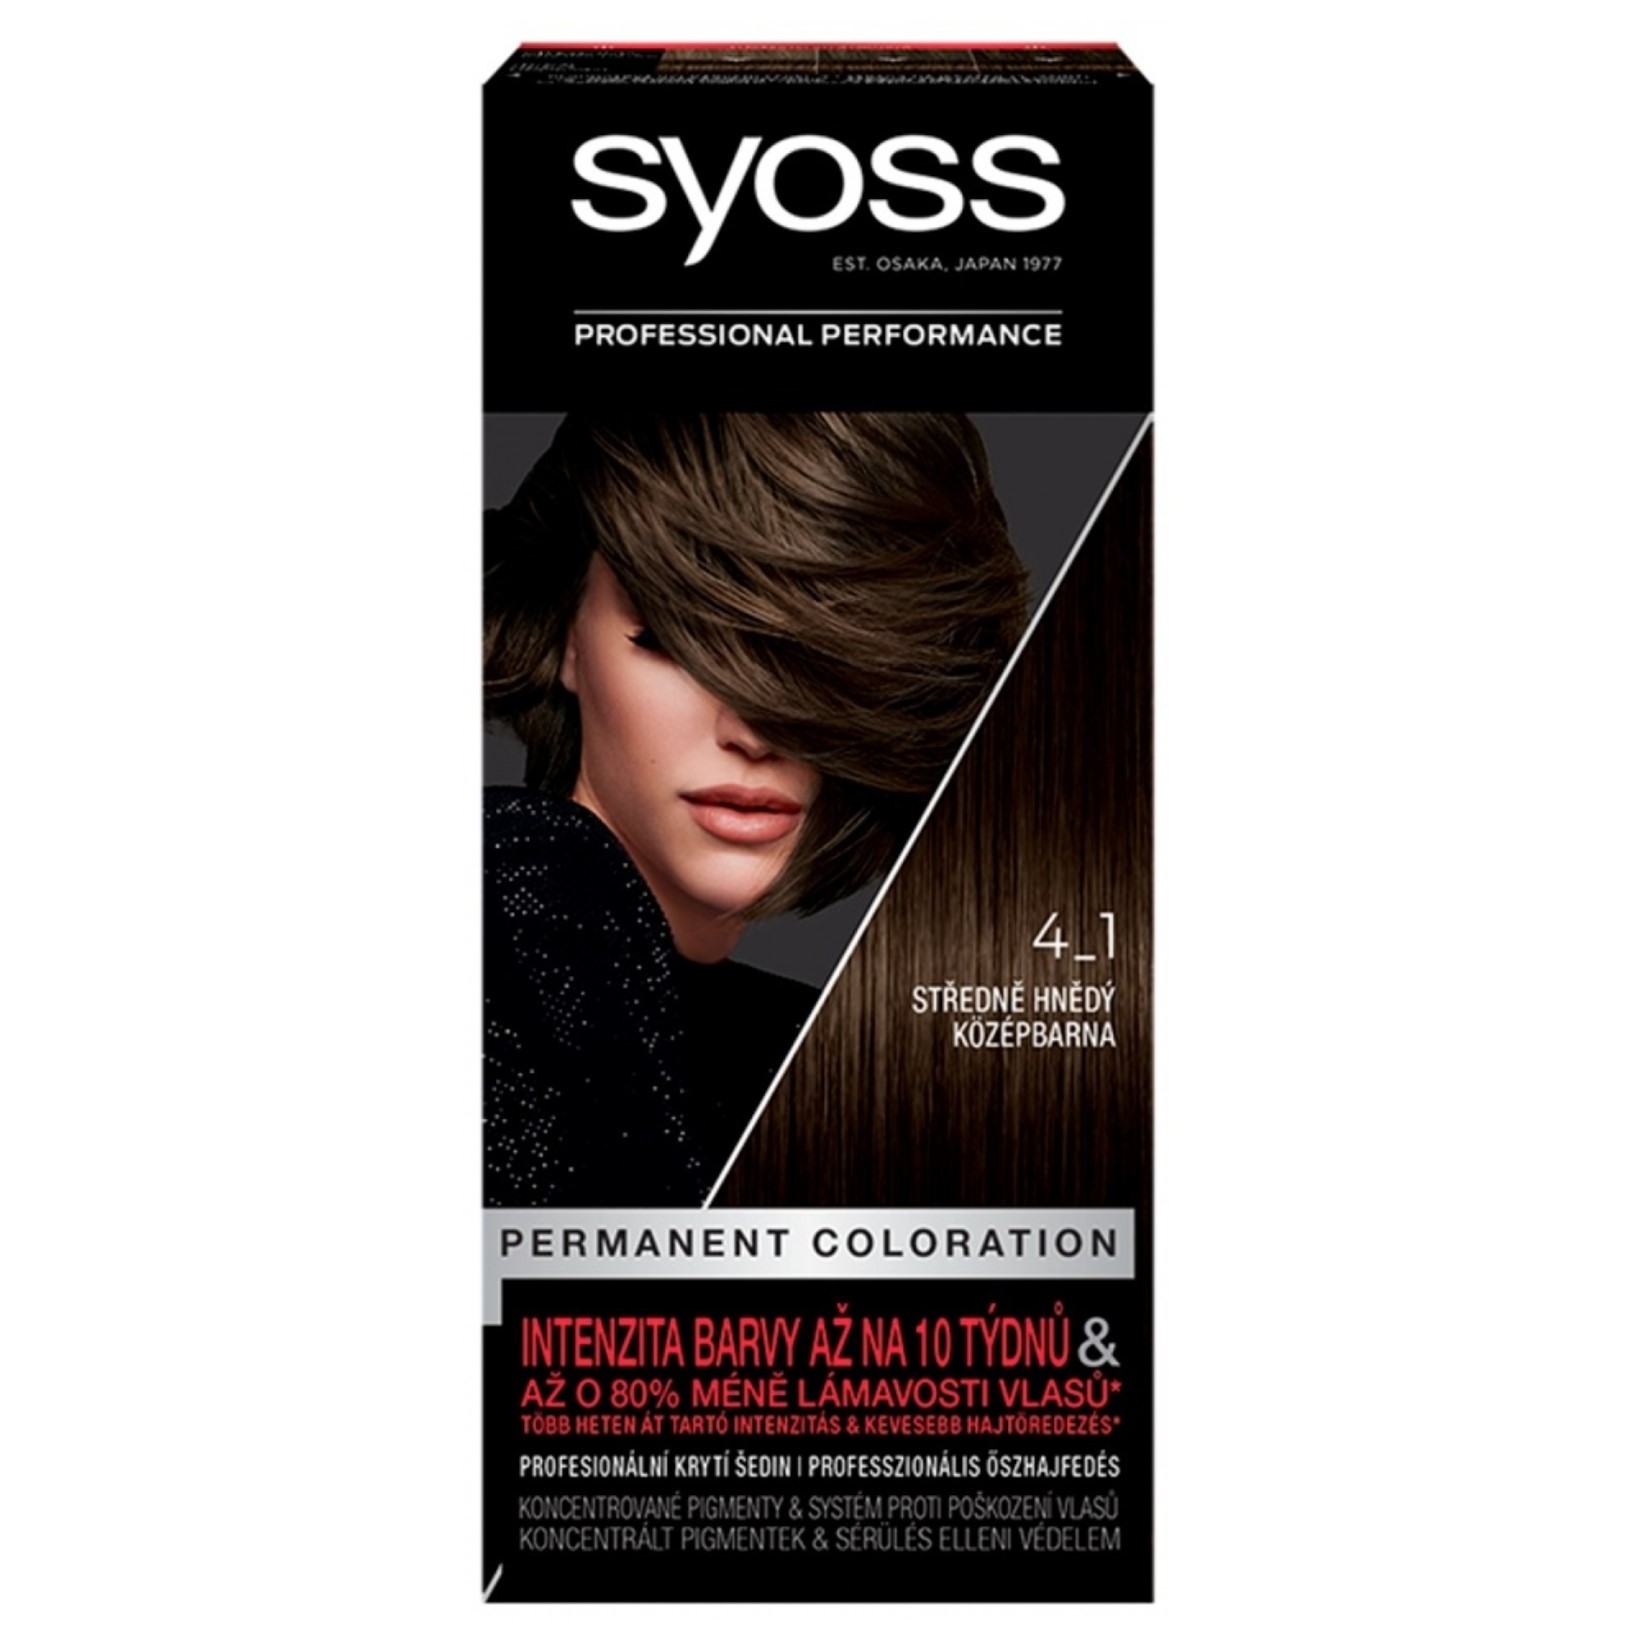 Syoss barva na vlasy Professional Performance 4-1 Středně hnědý